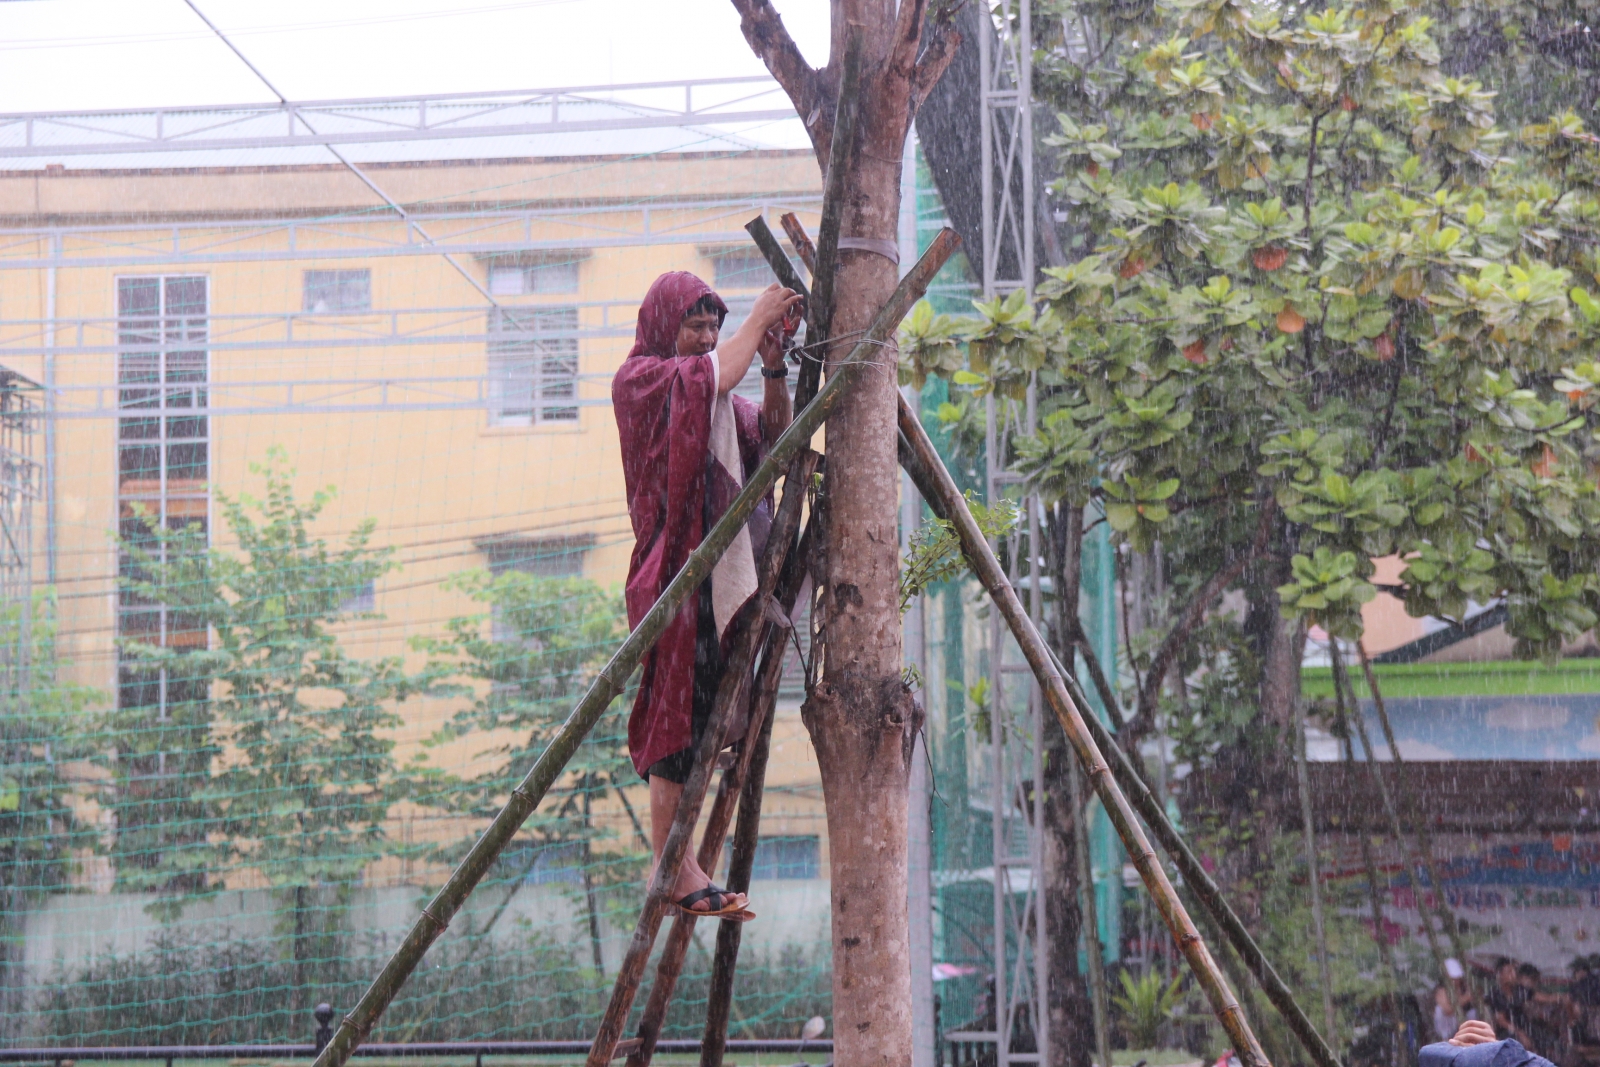 Nghệ An: Các trường ở hạ lưu thủy điện bảo đảm an toàn cho học sinh